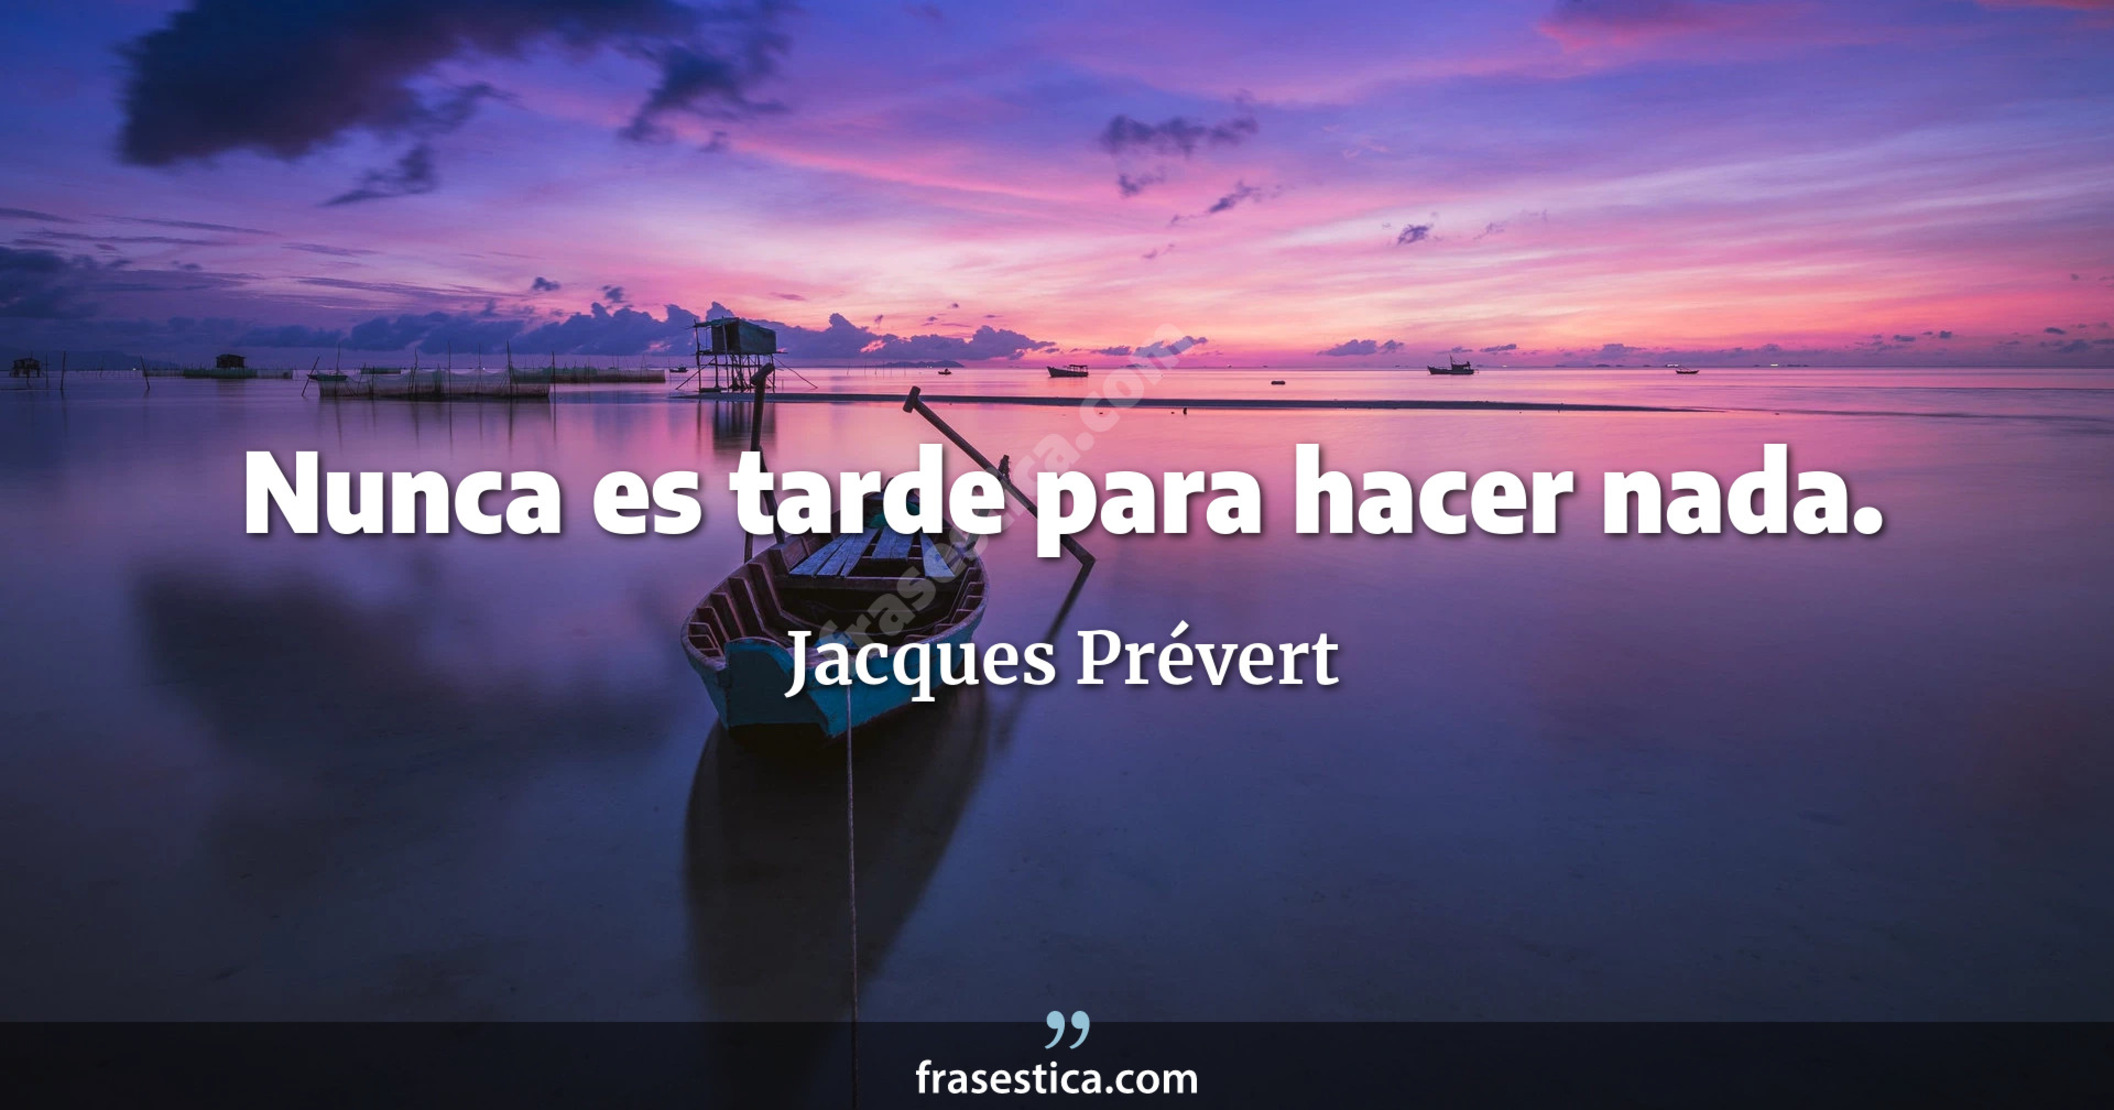 Nunca es tarde para hacer nada. - Jacques Prévert